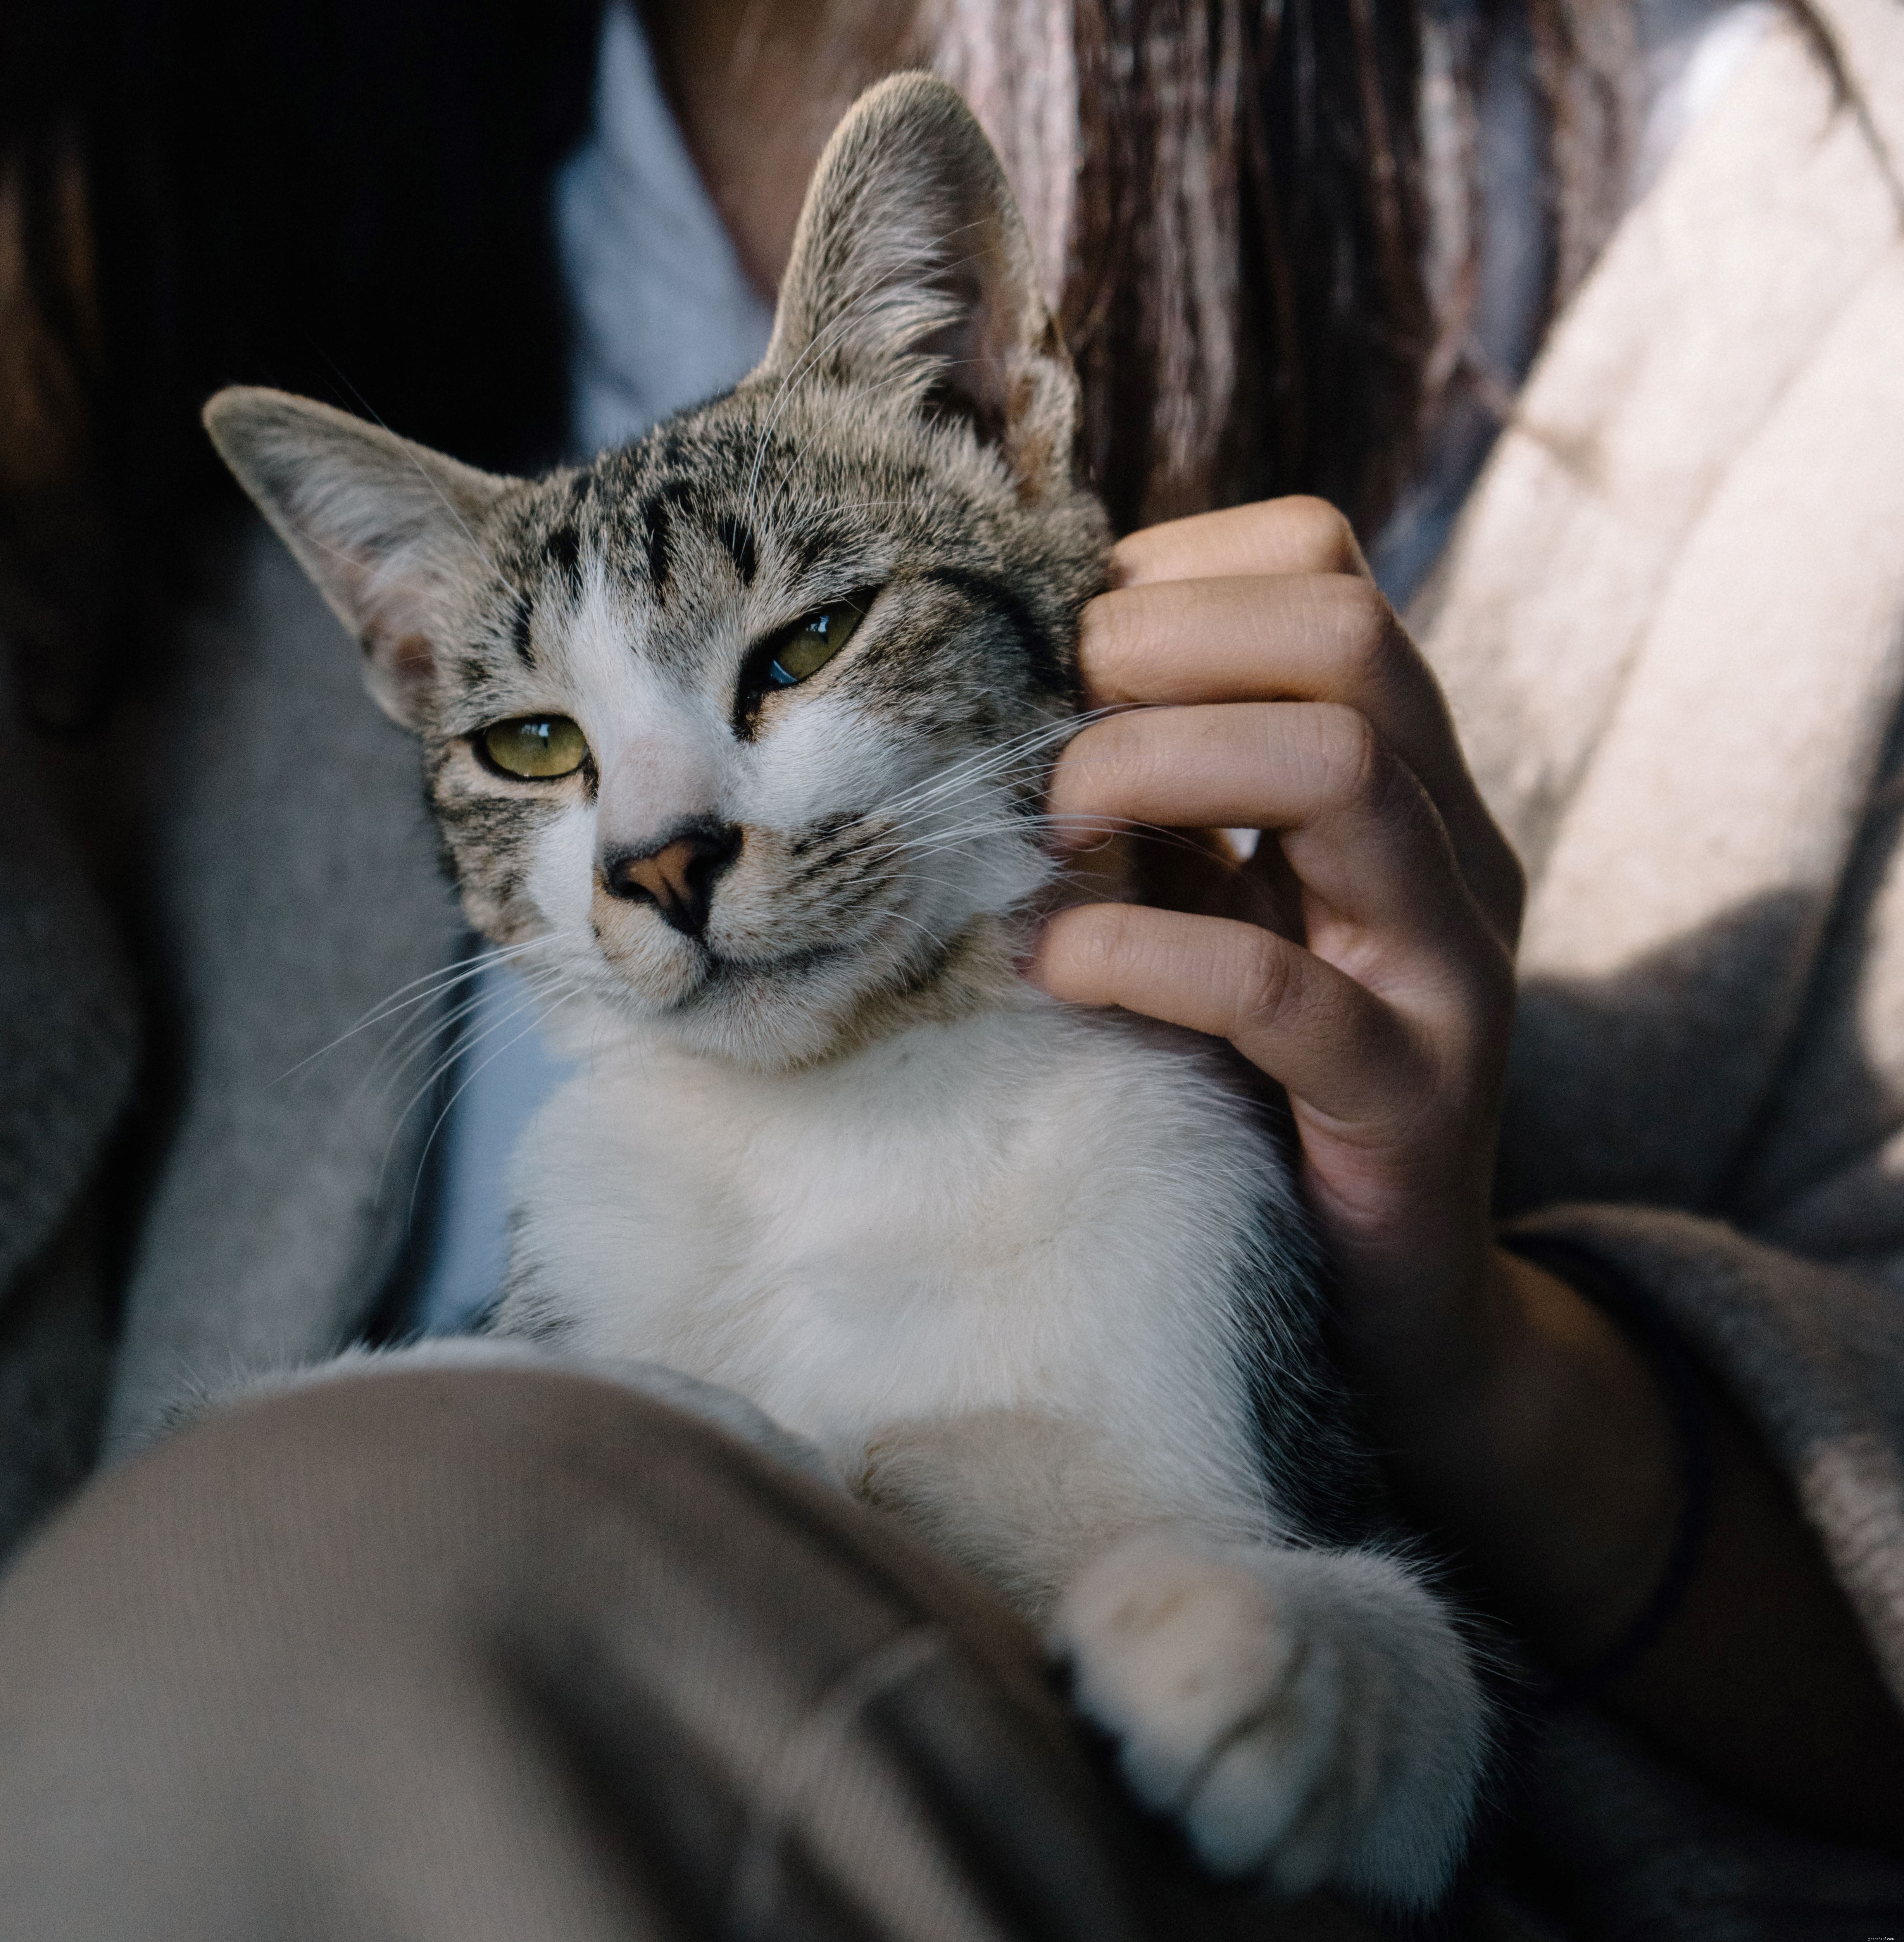 Vous craignez que votre chat soit laissé plus souvent à lui-même après le confinement ? Lisez notre guide pour les aider à s habituer à un changement de routine